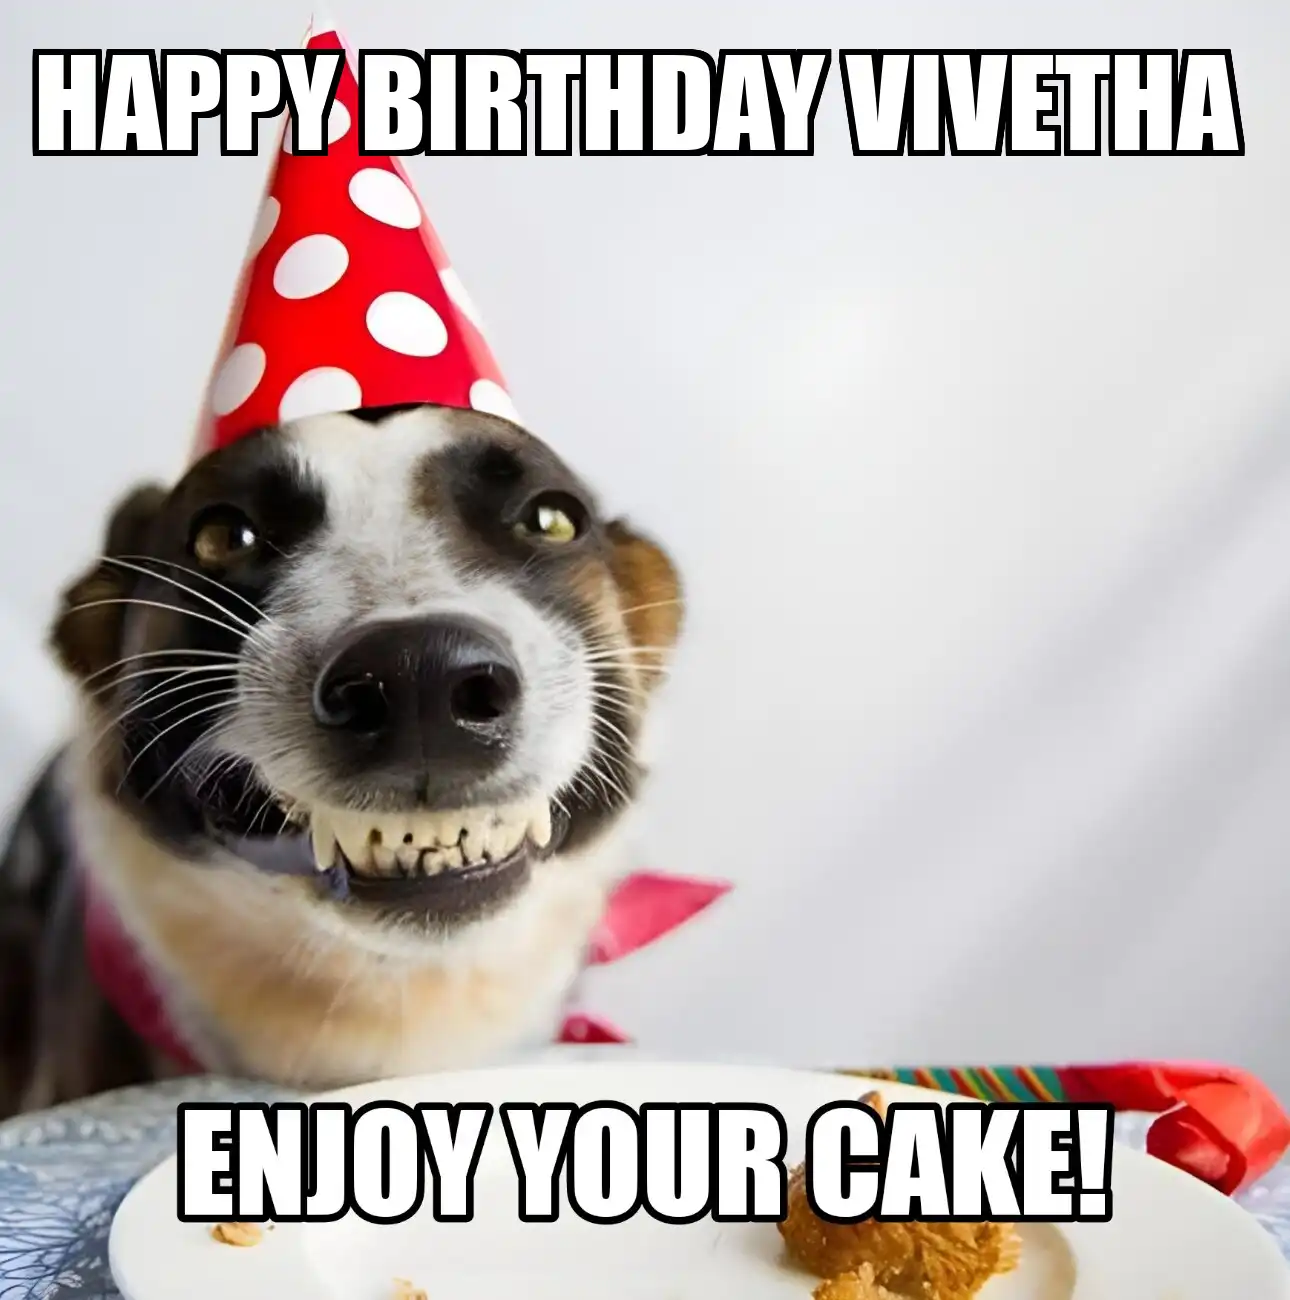 Happy Birthday Vivetha Enjoy Your Cake Dog Meme